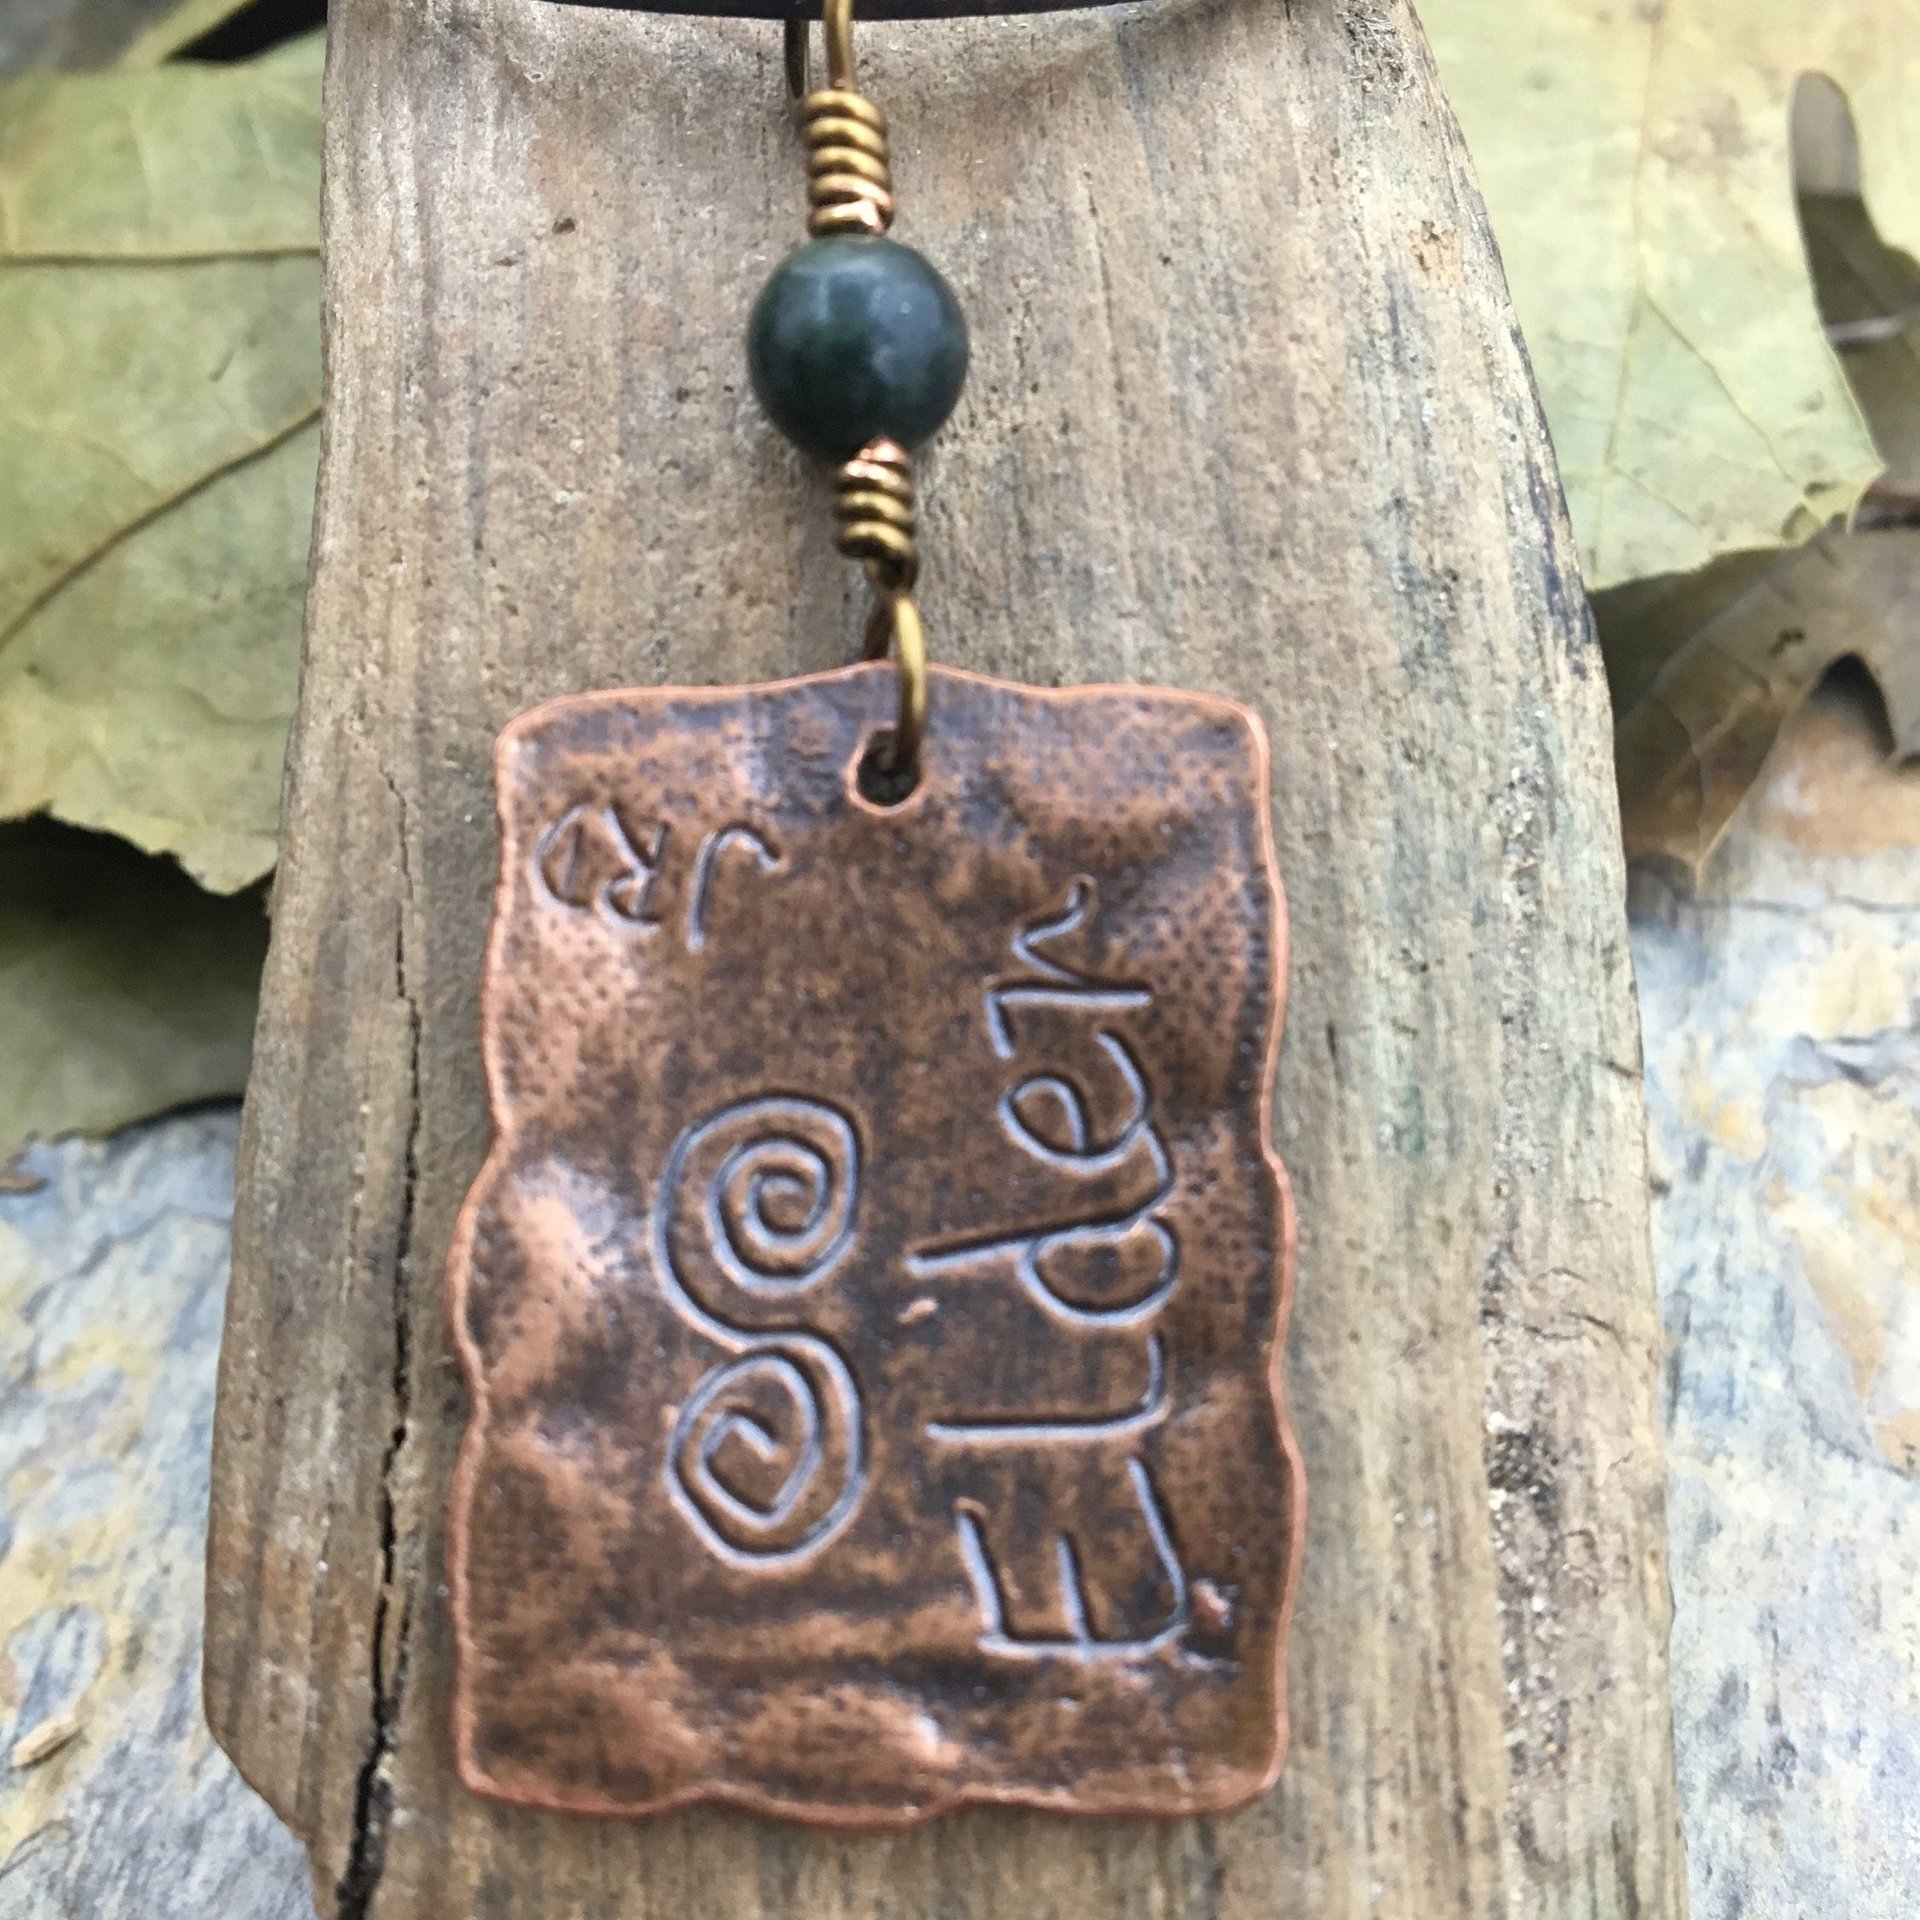 Elder Tree Ogham Charm, Copper Pendant, Connemara Marble, Celtic Tree Astrology, Hand Carved, Irish Celtic Zodiac, November 25 – December 23